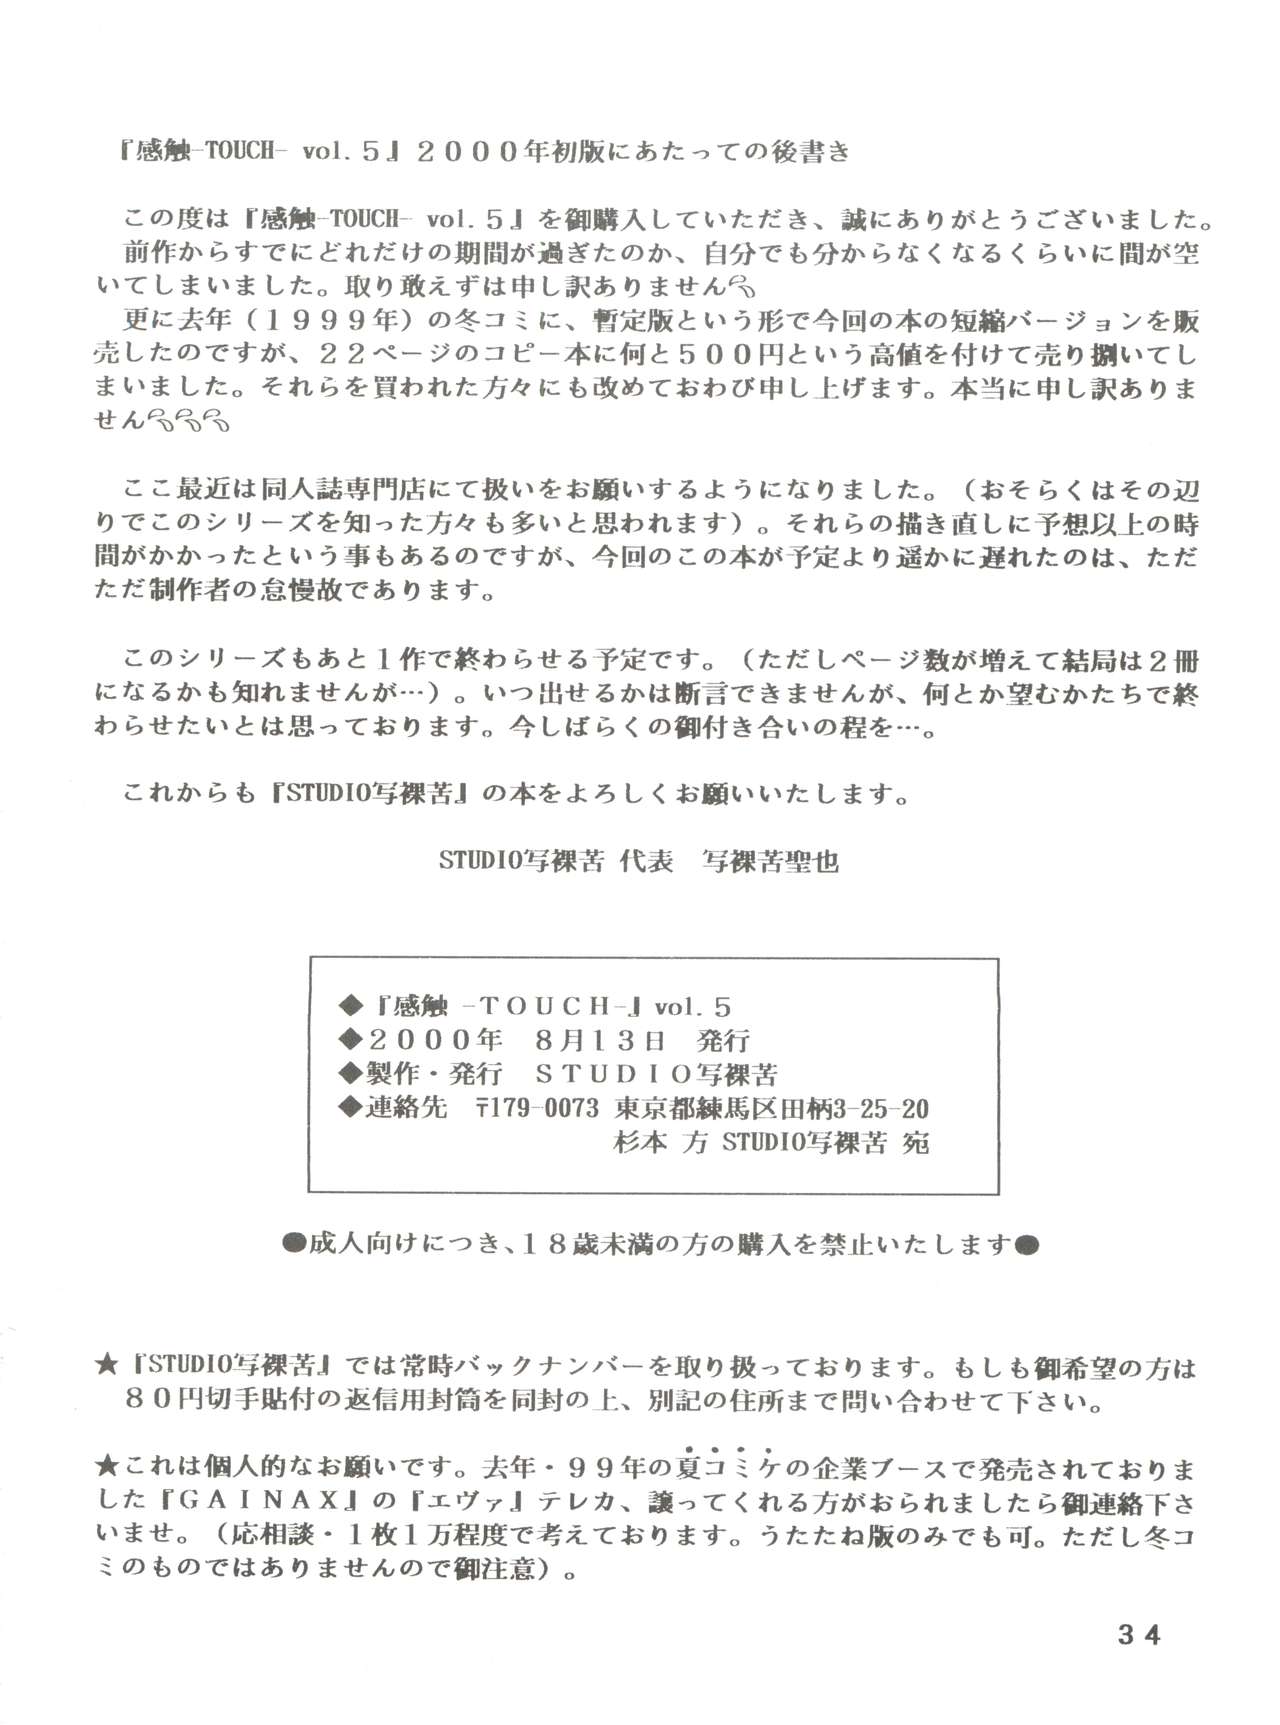 [STUDIO SHARAKU (Sharaku Seiya)] Kanshoku -TOUCH- vol.5 (Miyuki) [2000-08-13] page 34 full